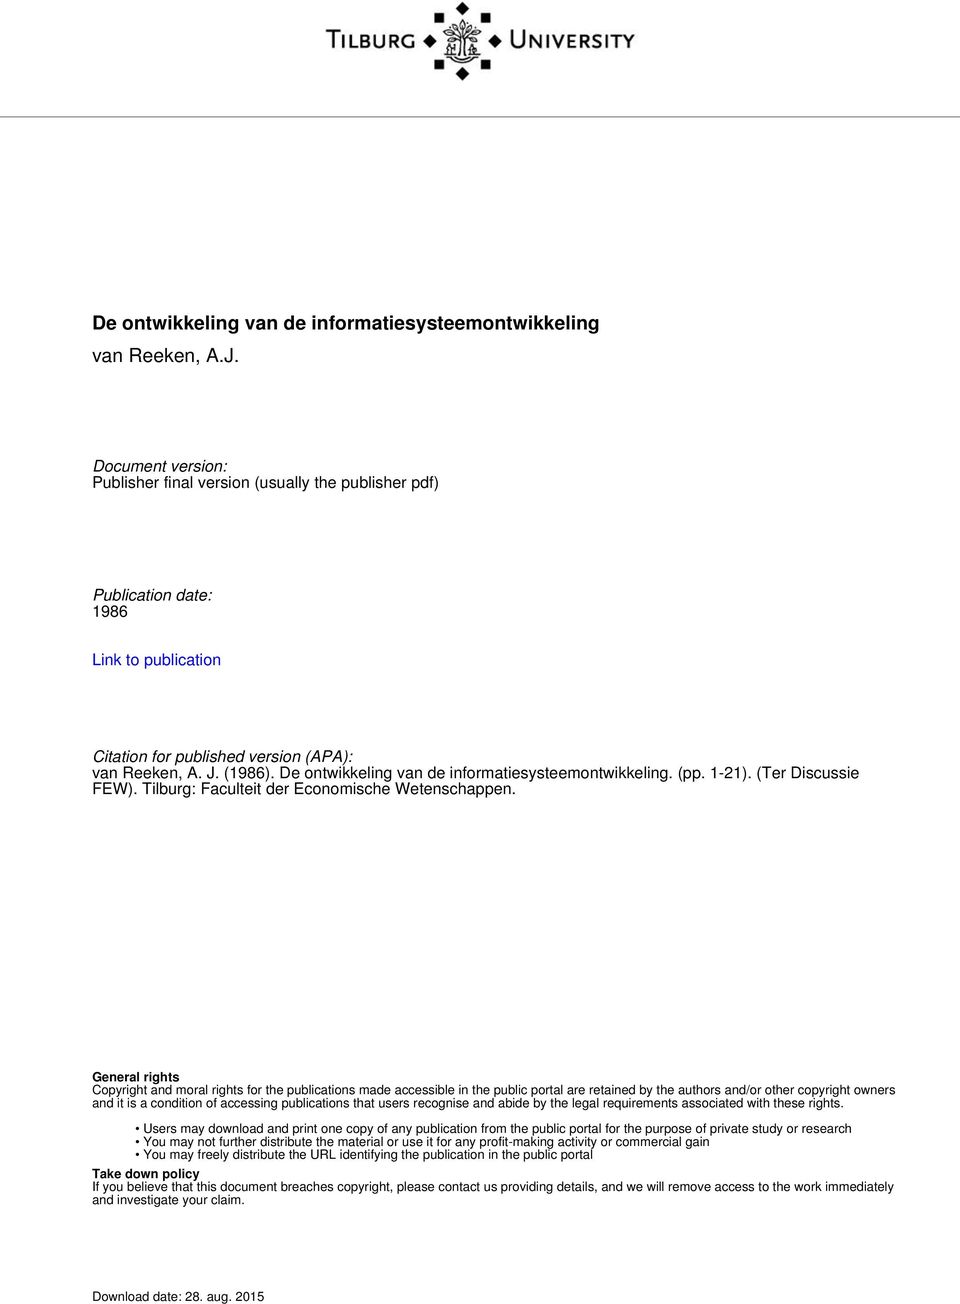 De ontwikkeling van de informatiesysteemontwikkeling. (pp. 1-21). (Ter Discussie FEW). Tilburg: Faculteit der Economische Wetenschappen.